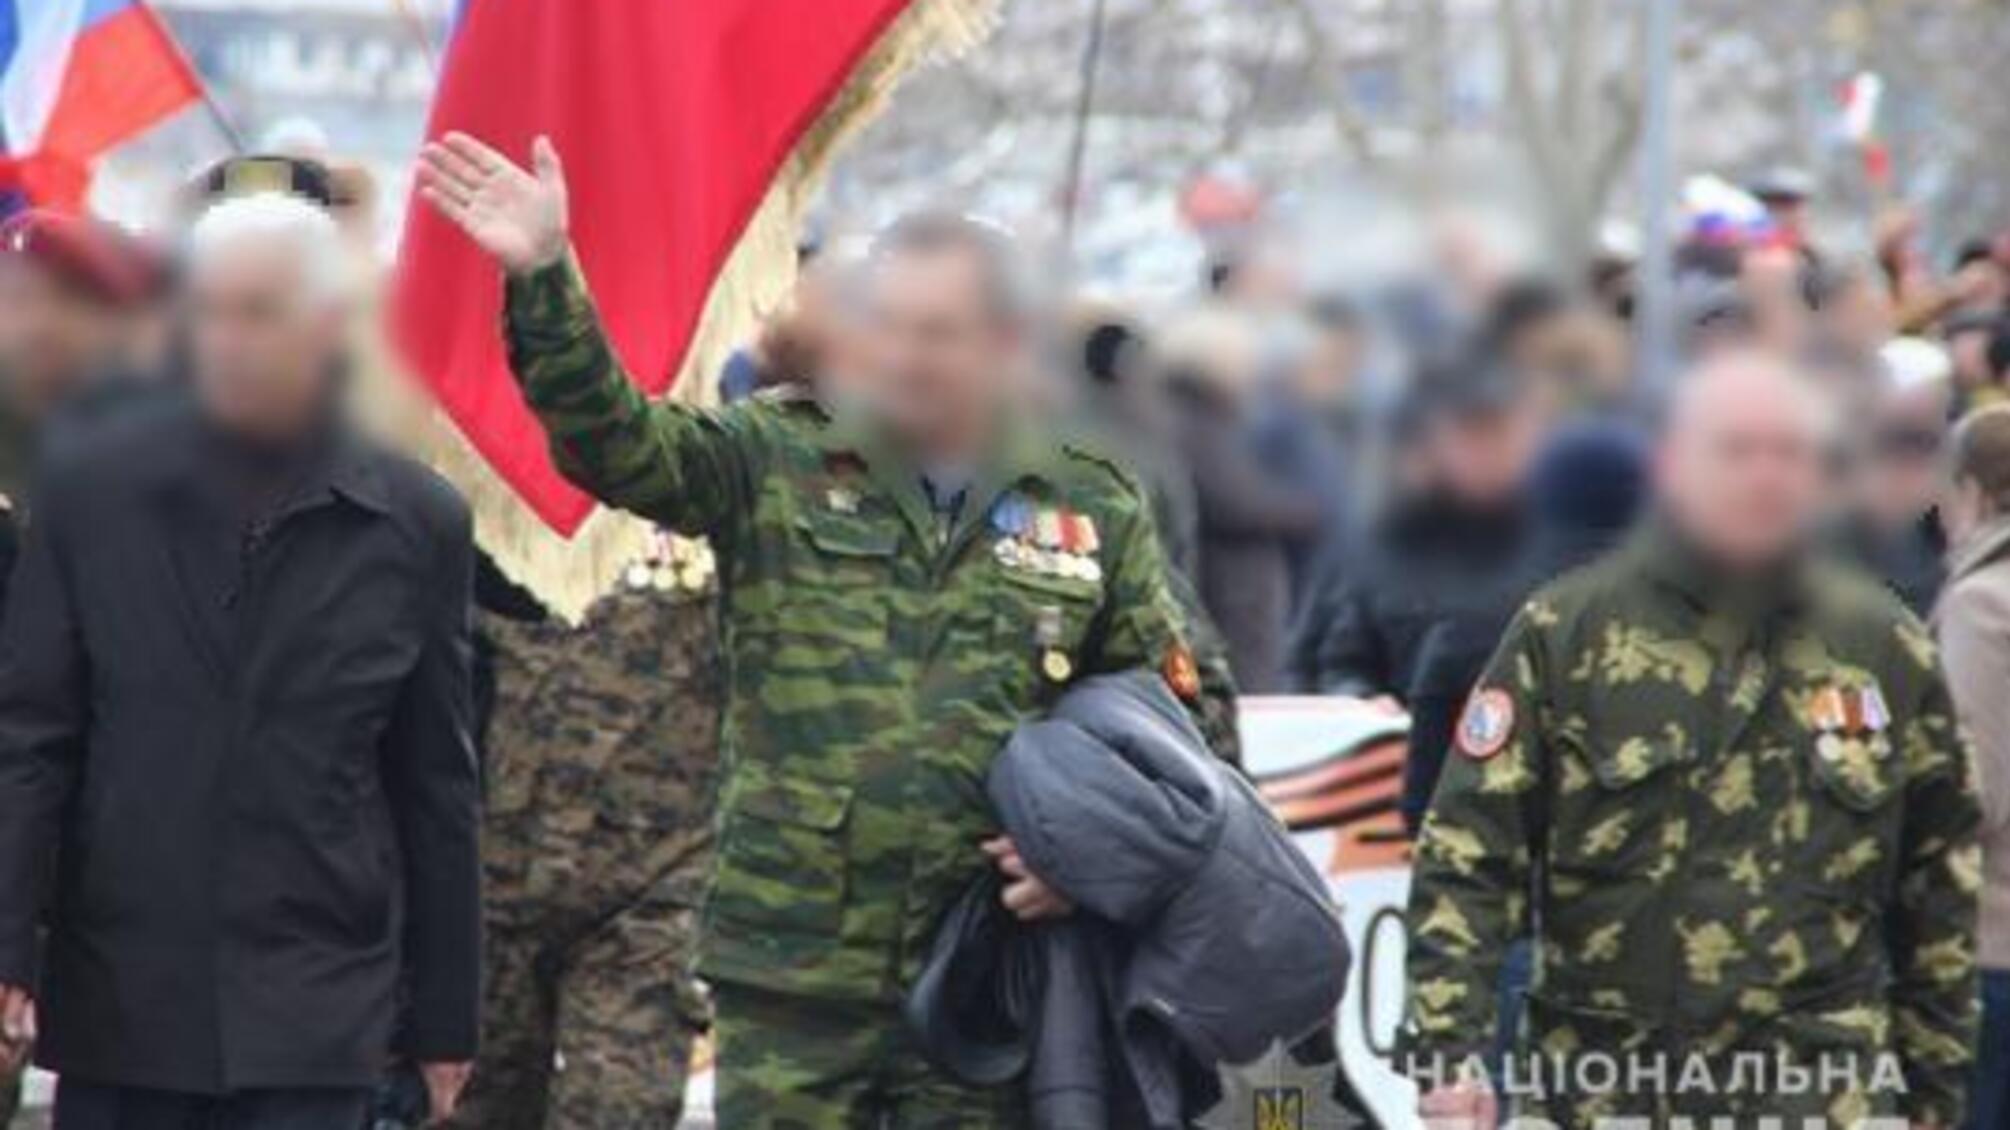 Слідчі поліції Криму повідомили про підозру  керівнику штабу незаконного збройного формування